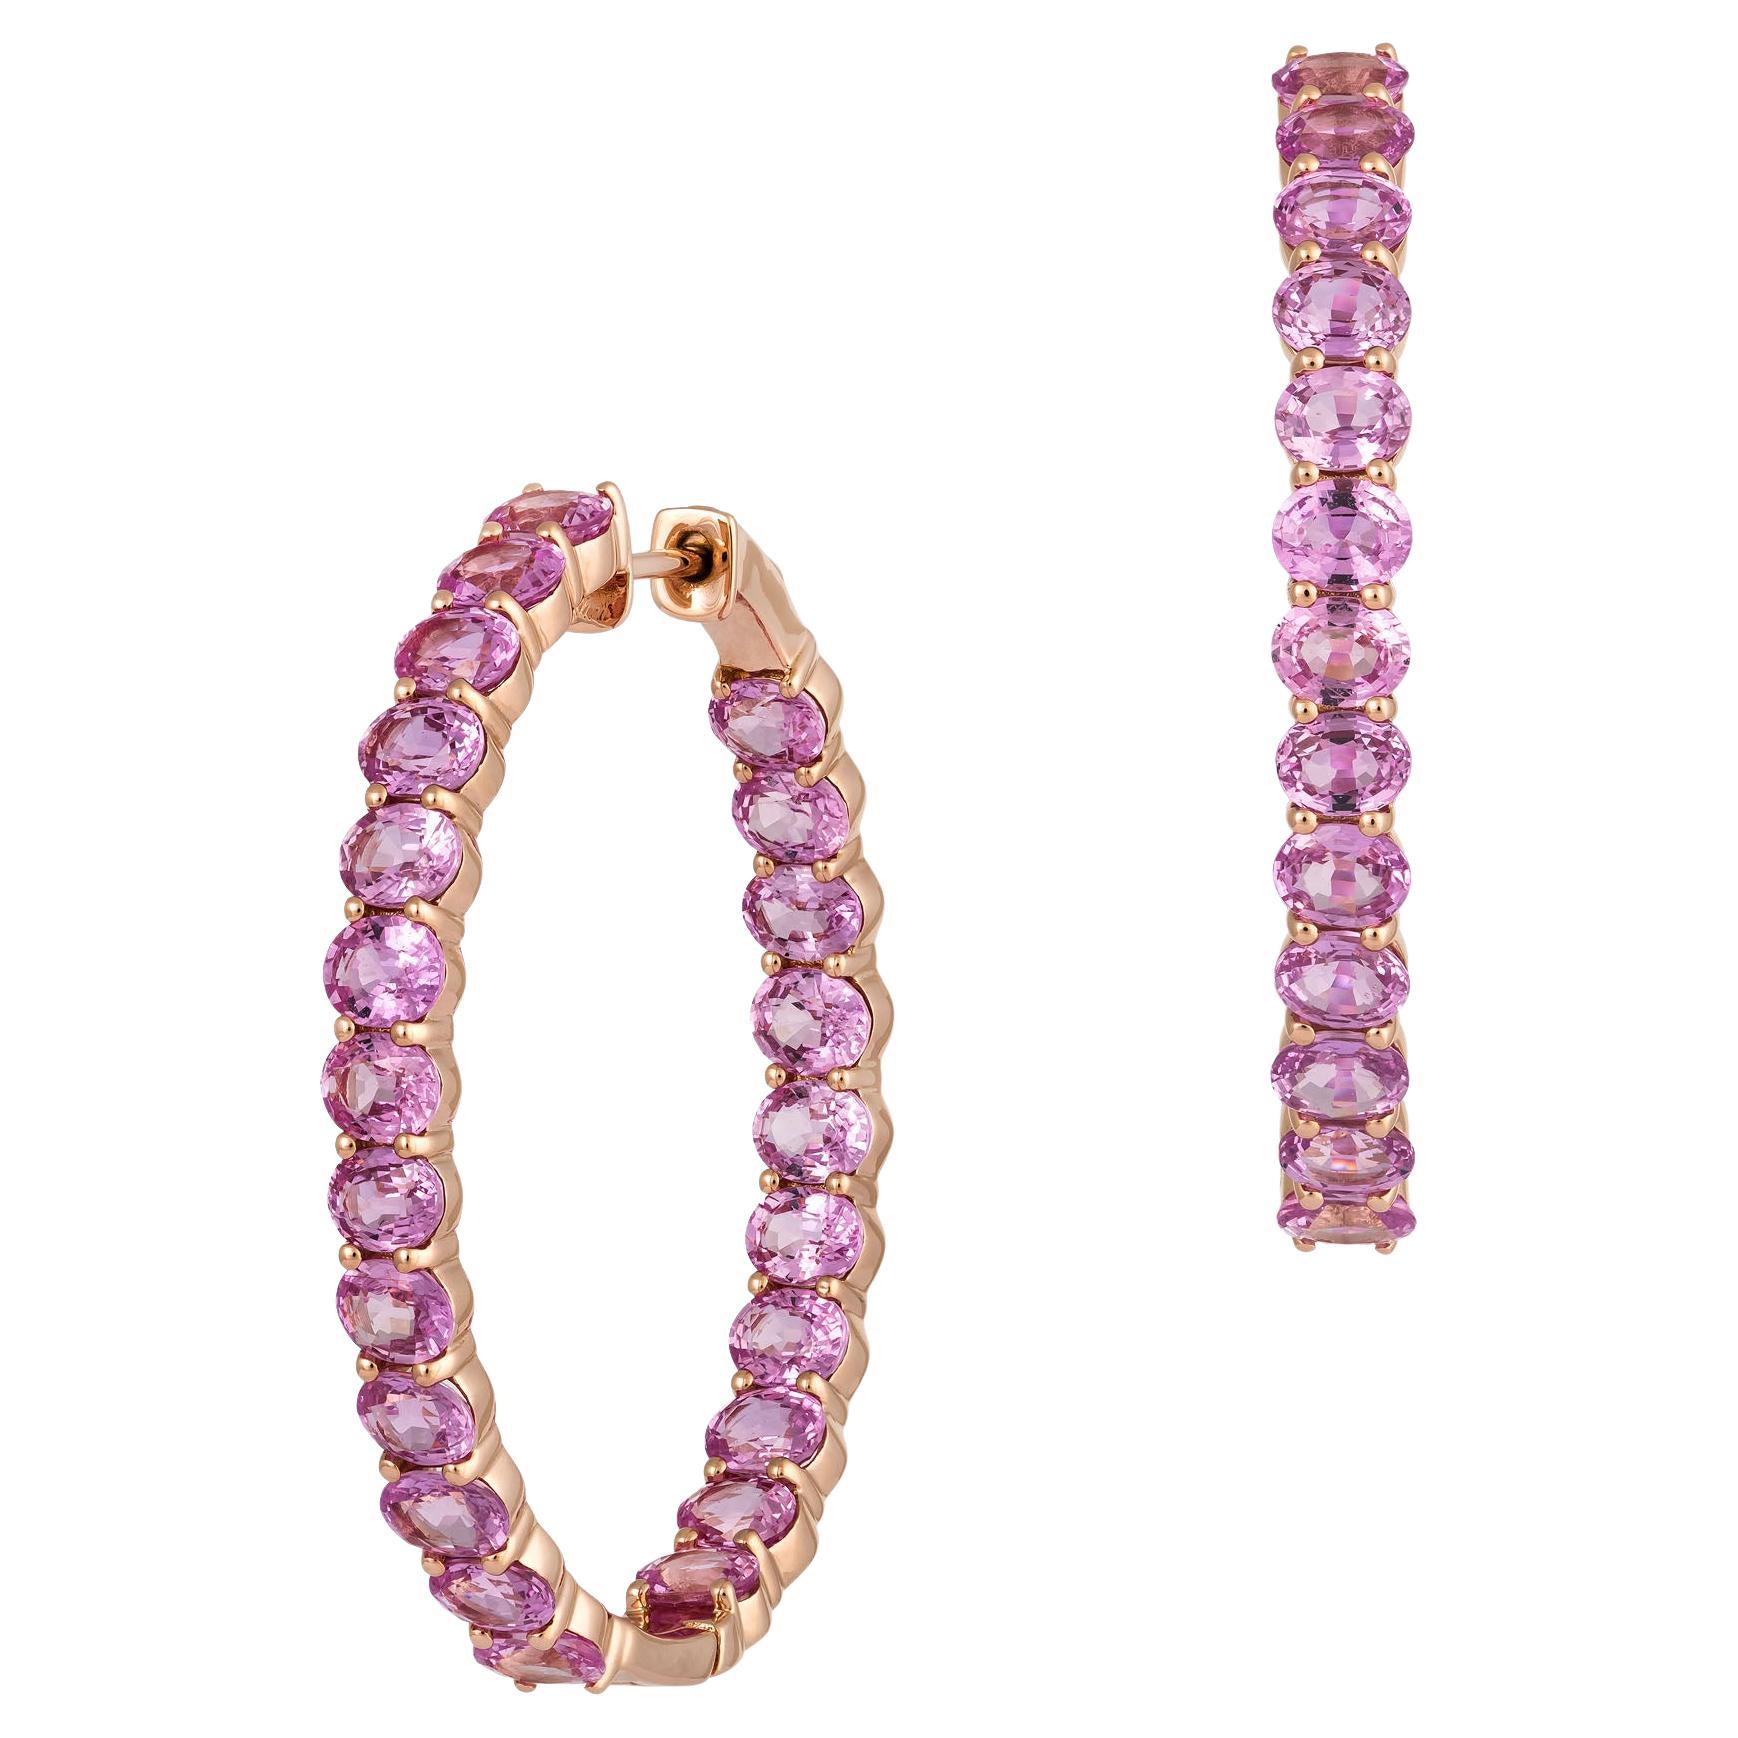 NWT $15,000 18kt Fancy Large Glittering Fancy Round Pink Sapphire Hoop Earrings